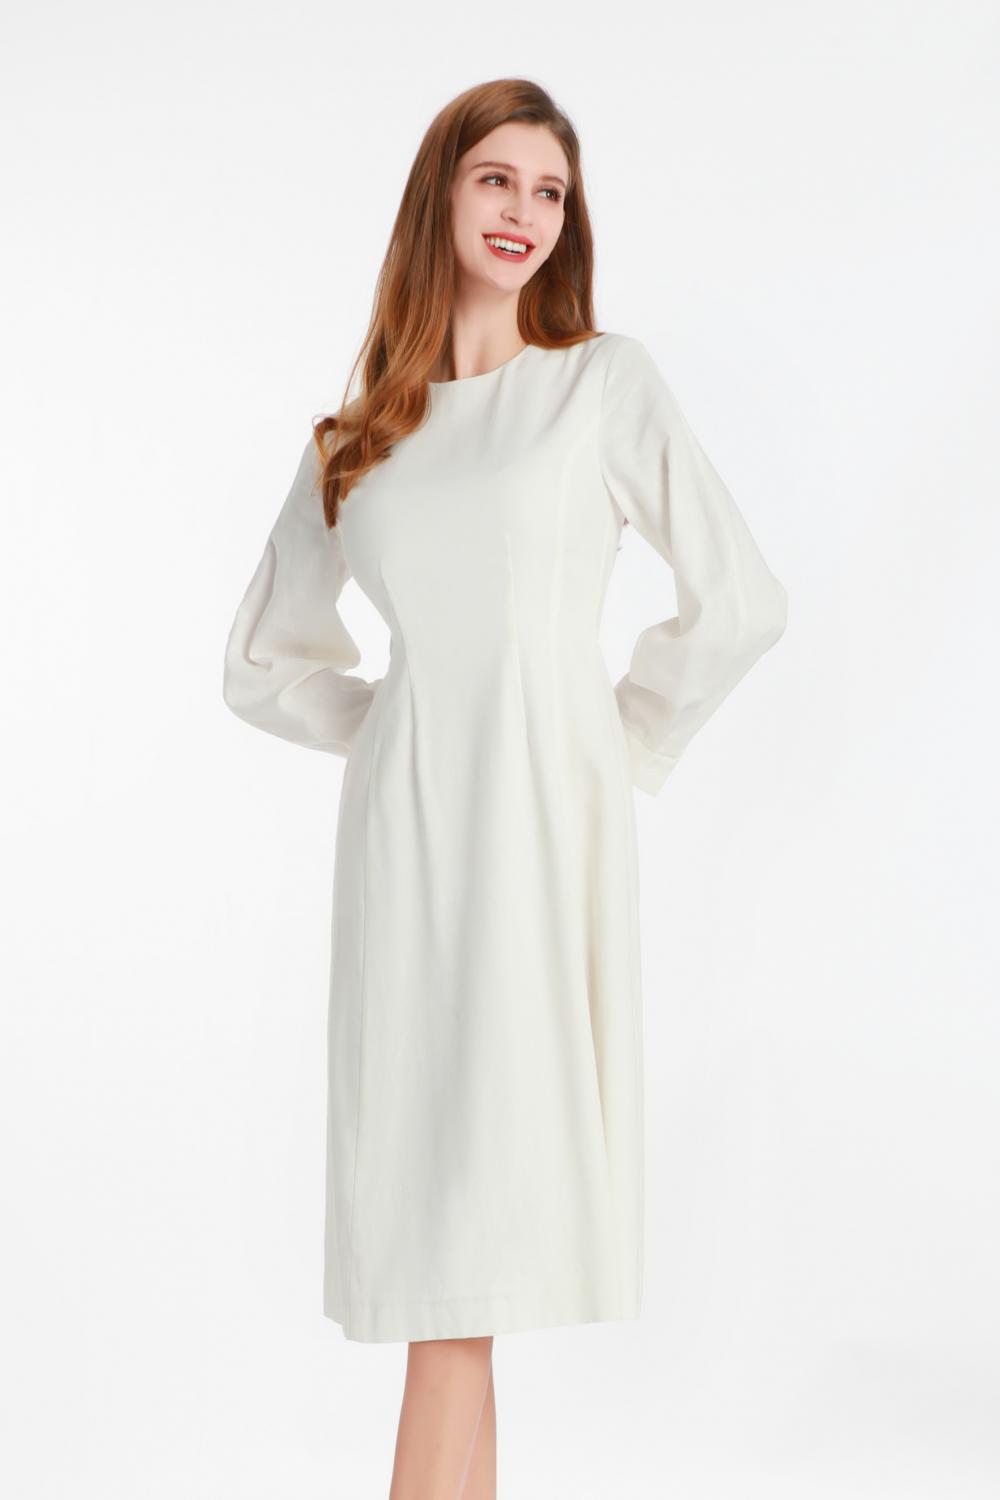 Witte jurk met lange mouwen met een kleine ronde kraag